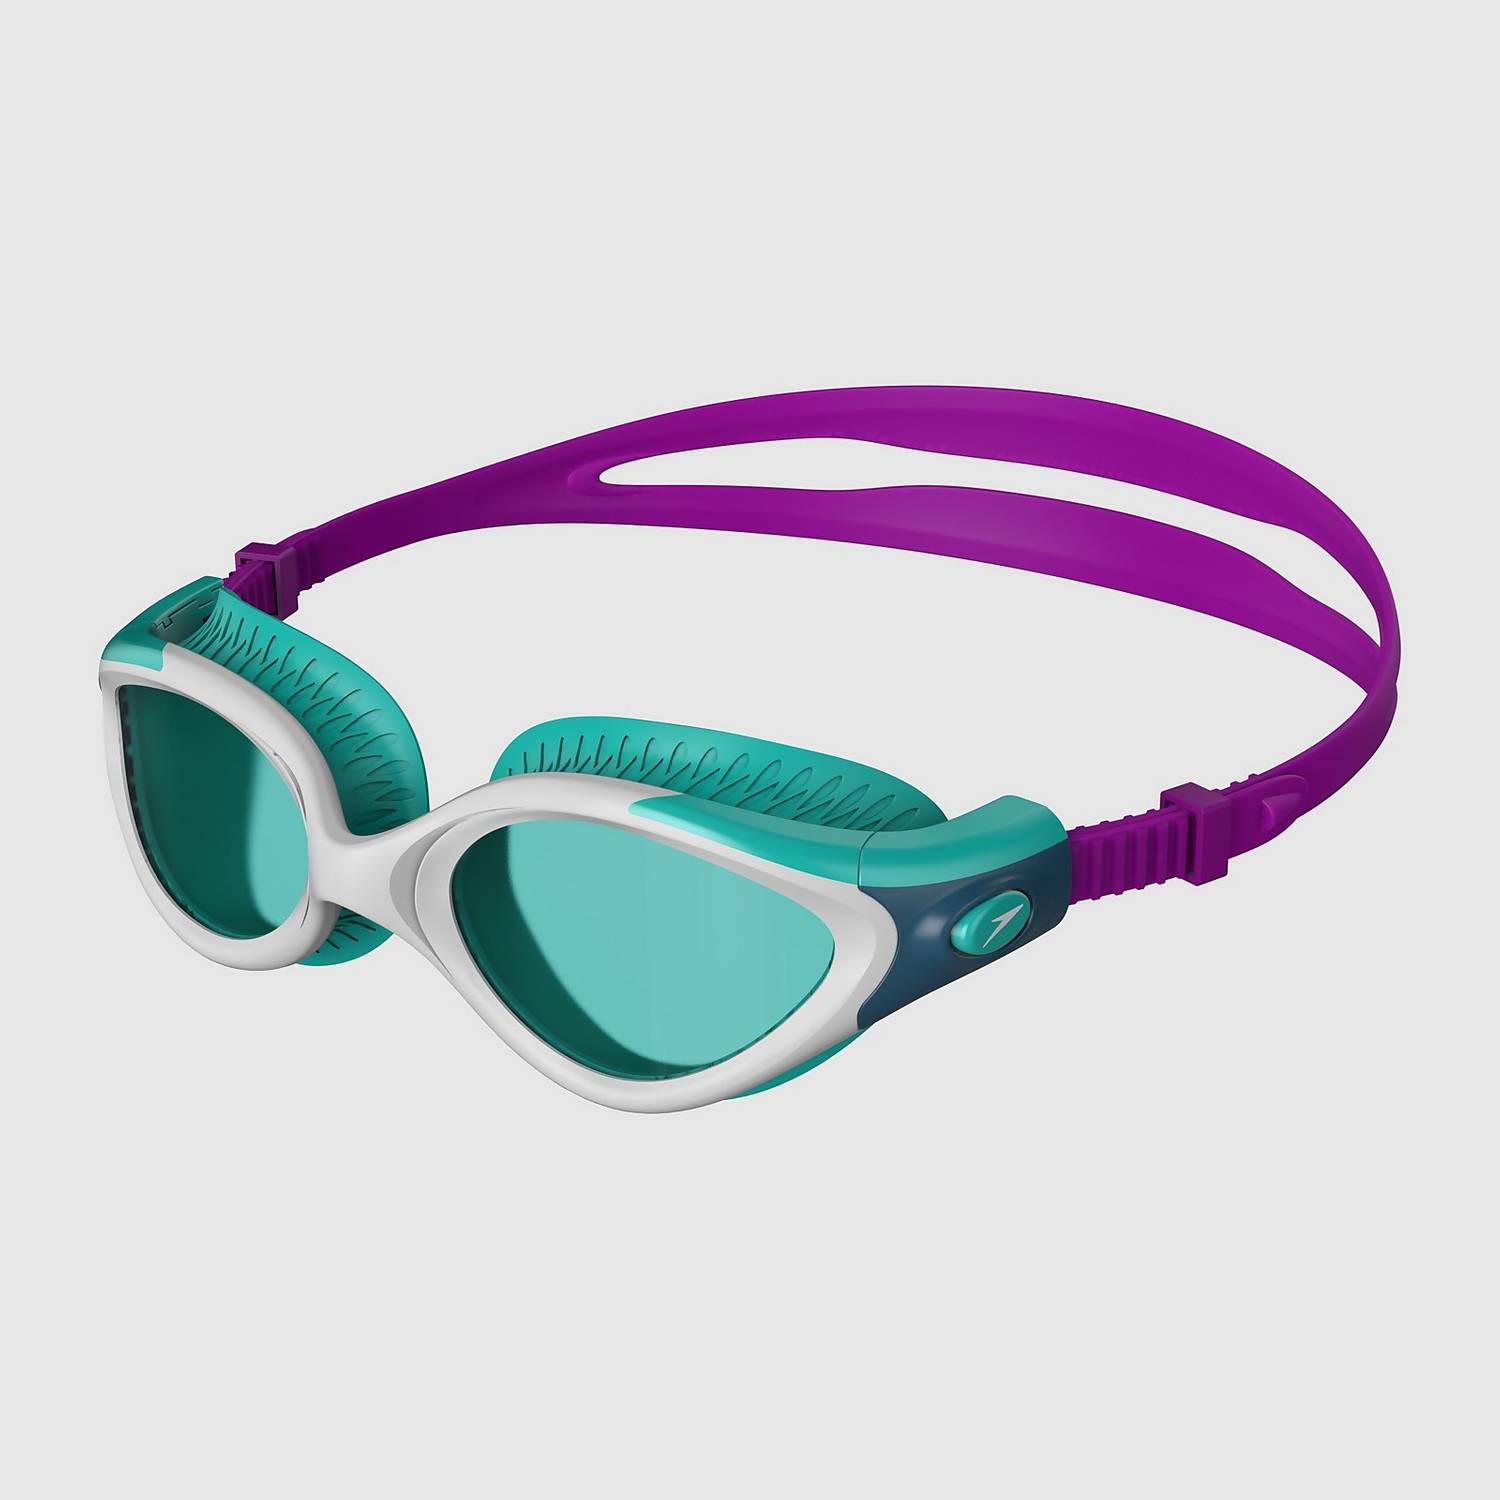 Speedo Futura Biofuse Flexiseal Women's Goggles - Purple/Mint-Bruntsfield Sports Online